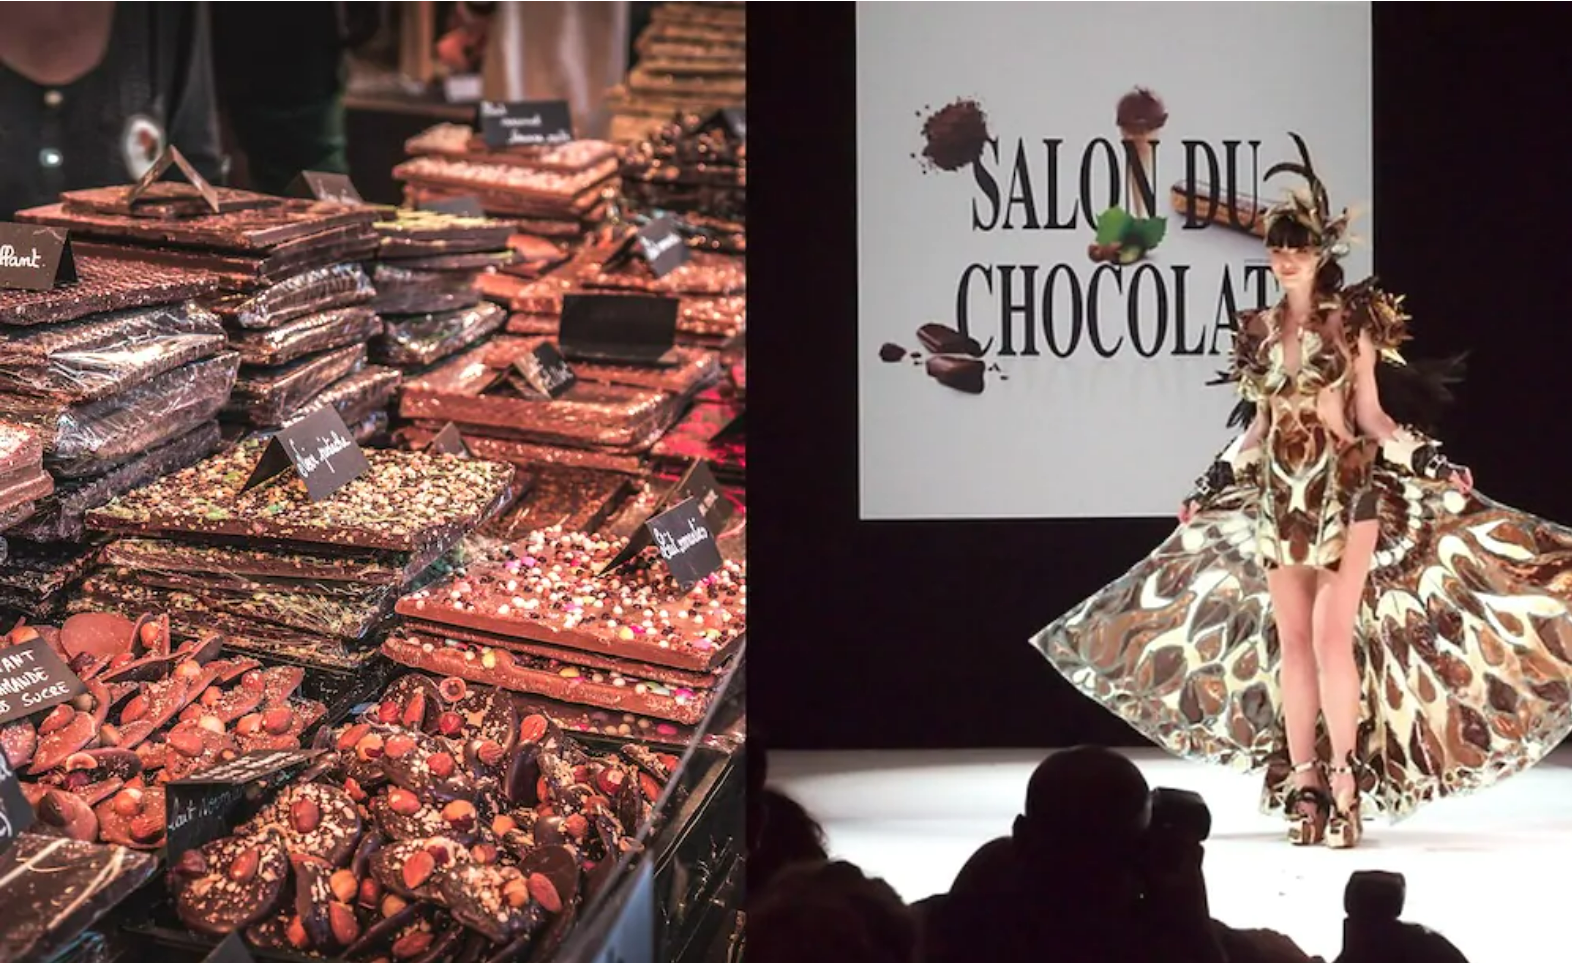 Salon du Chocolat de Paris prepares for its 28th deition, Japan will return